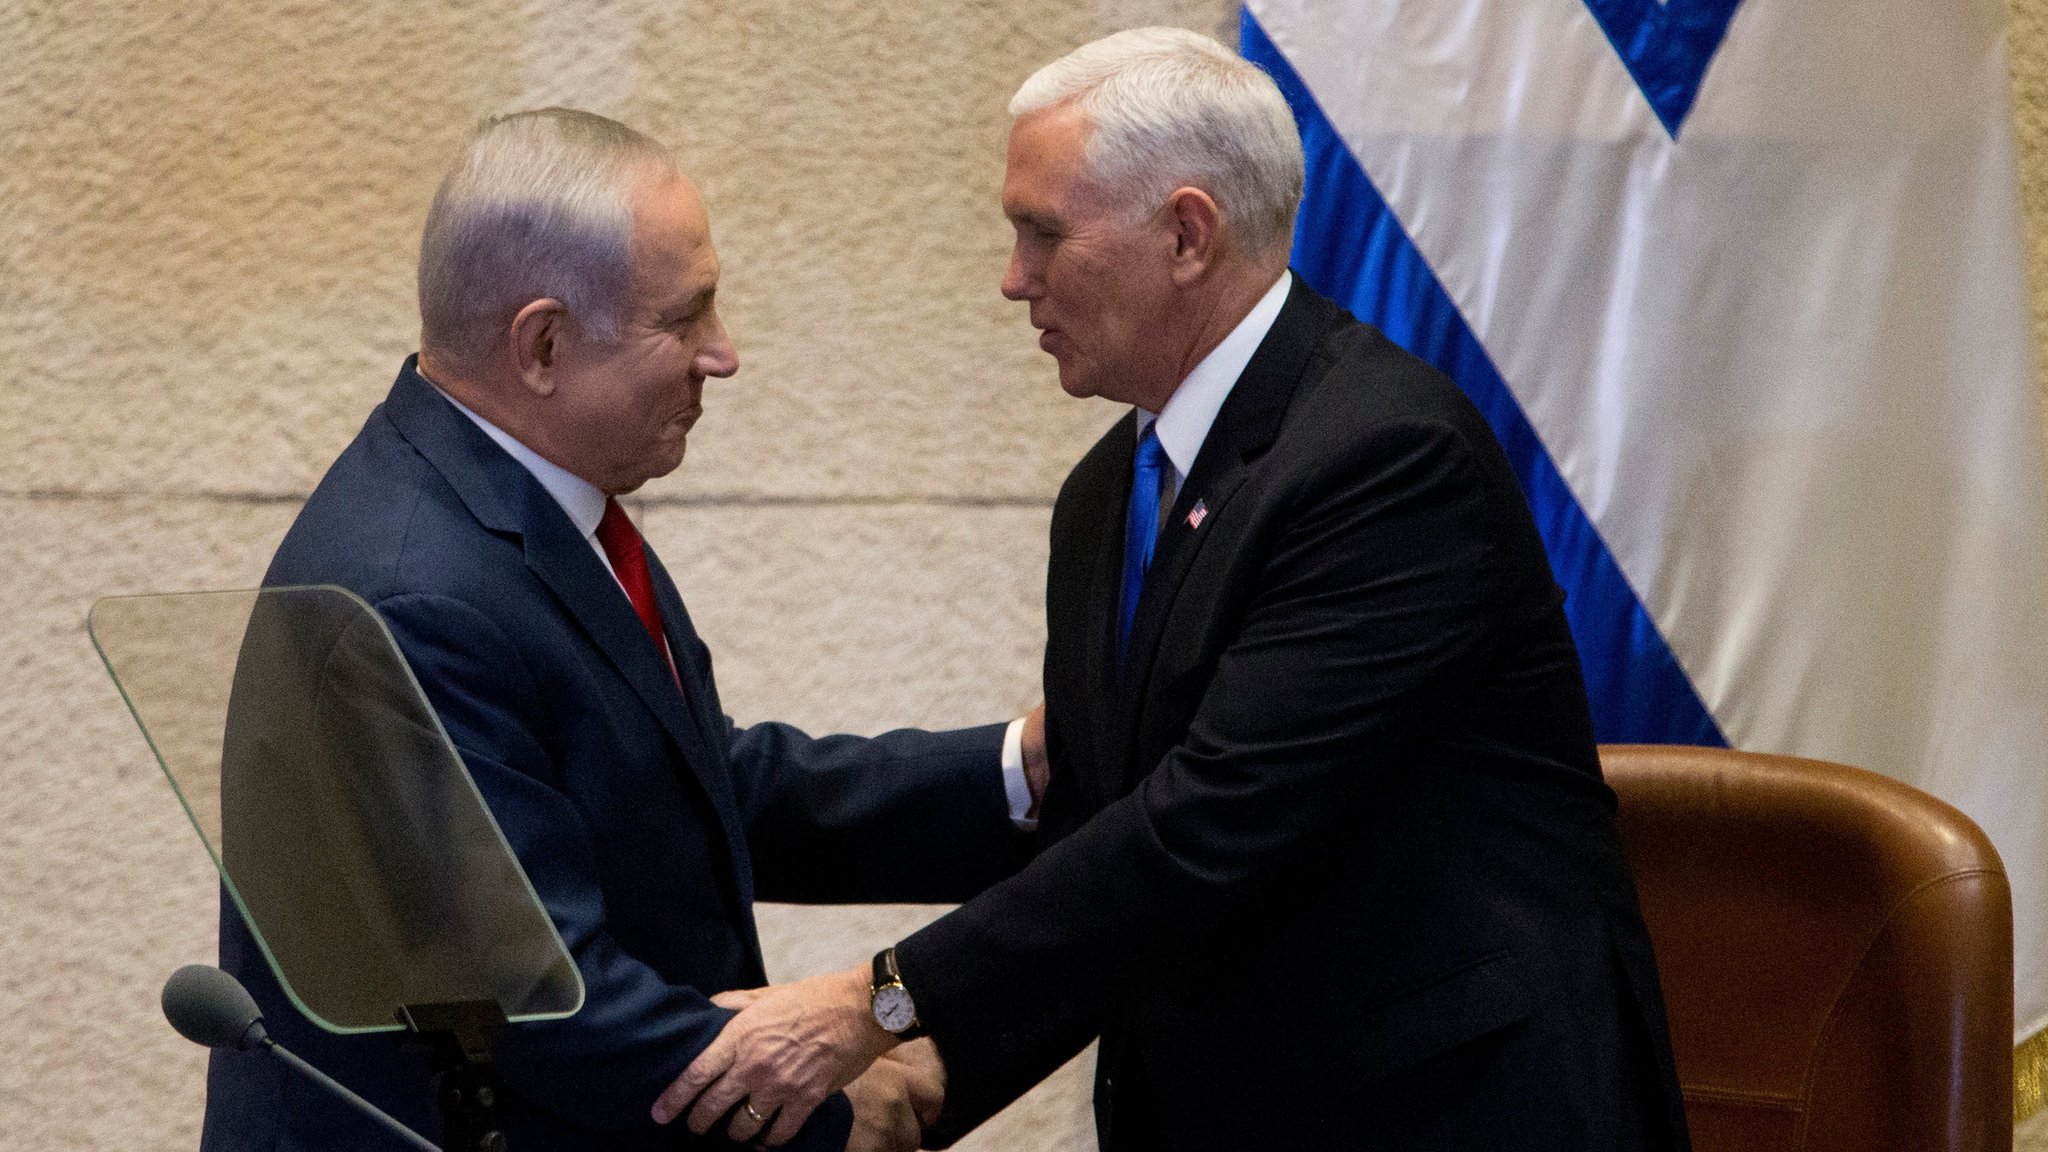 Премьер-министр Израиля Биньямин Нетаньяху пожимает руку вице-президенту США Майку Пенсу в Иерусалиме (22 января 2018 г.)